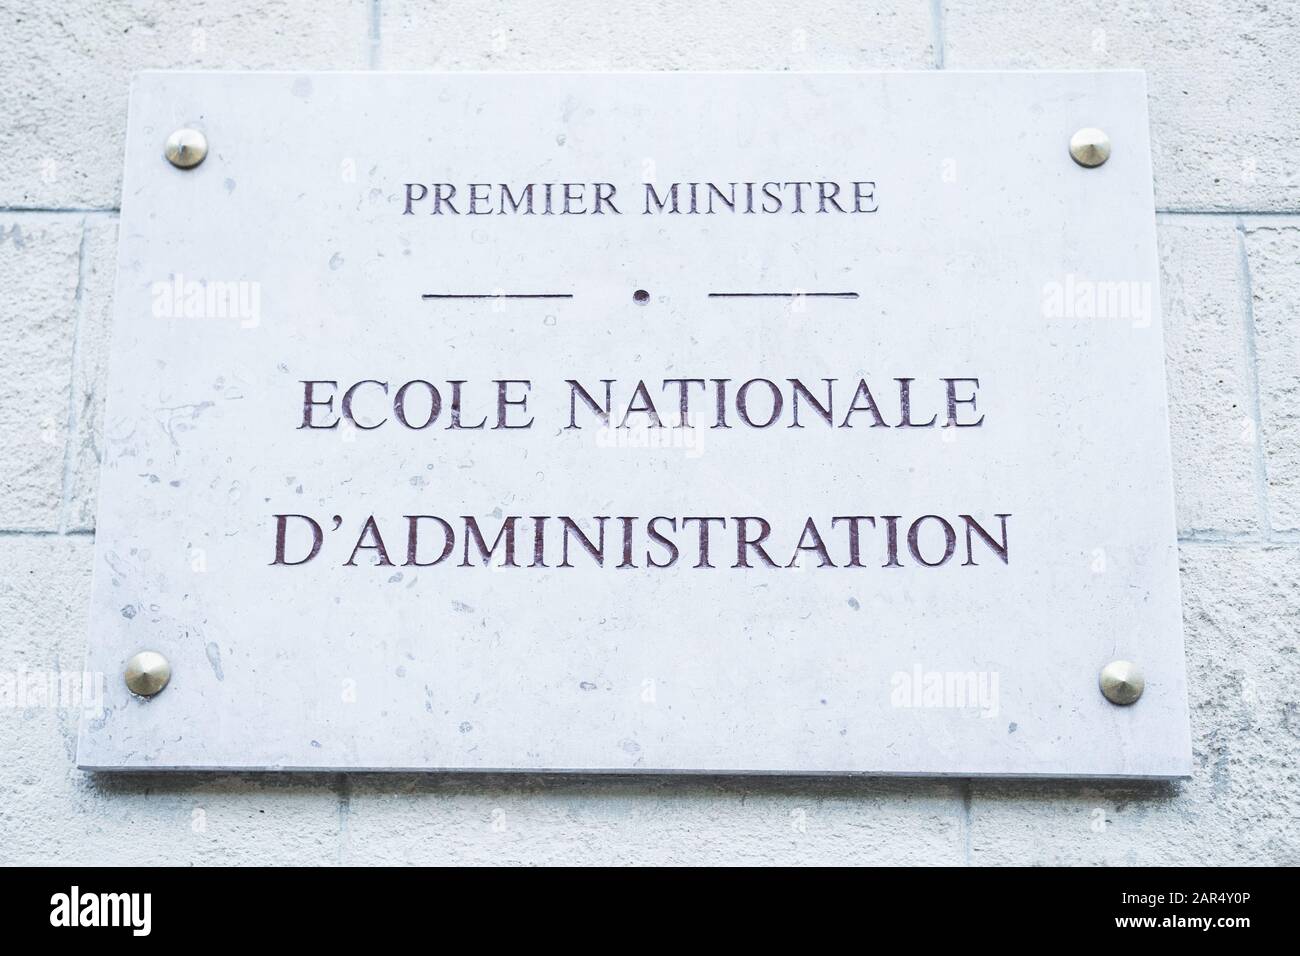 Premier miniatre, Ecole Nationale d'Administration (ENA, 6ème (6th, XIV) arrondissement, Paris, France, June 2019. French street sign. Stock Photo